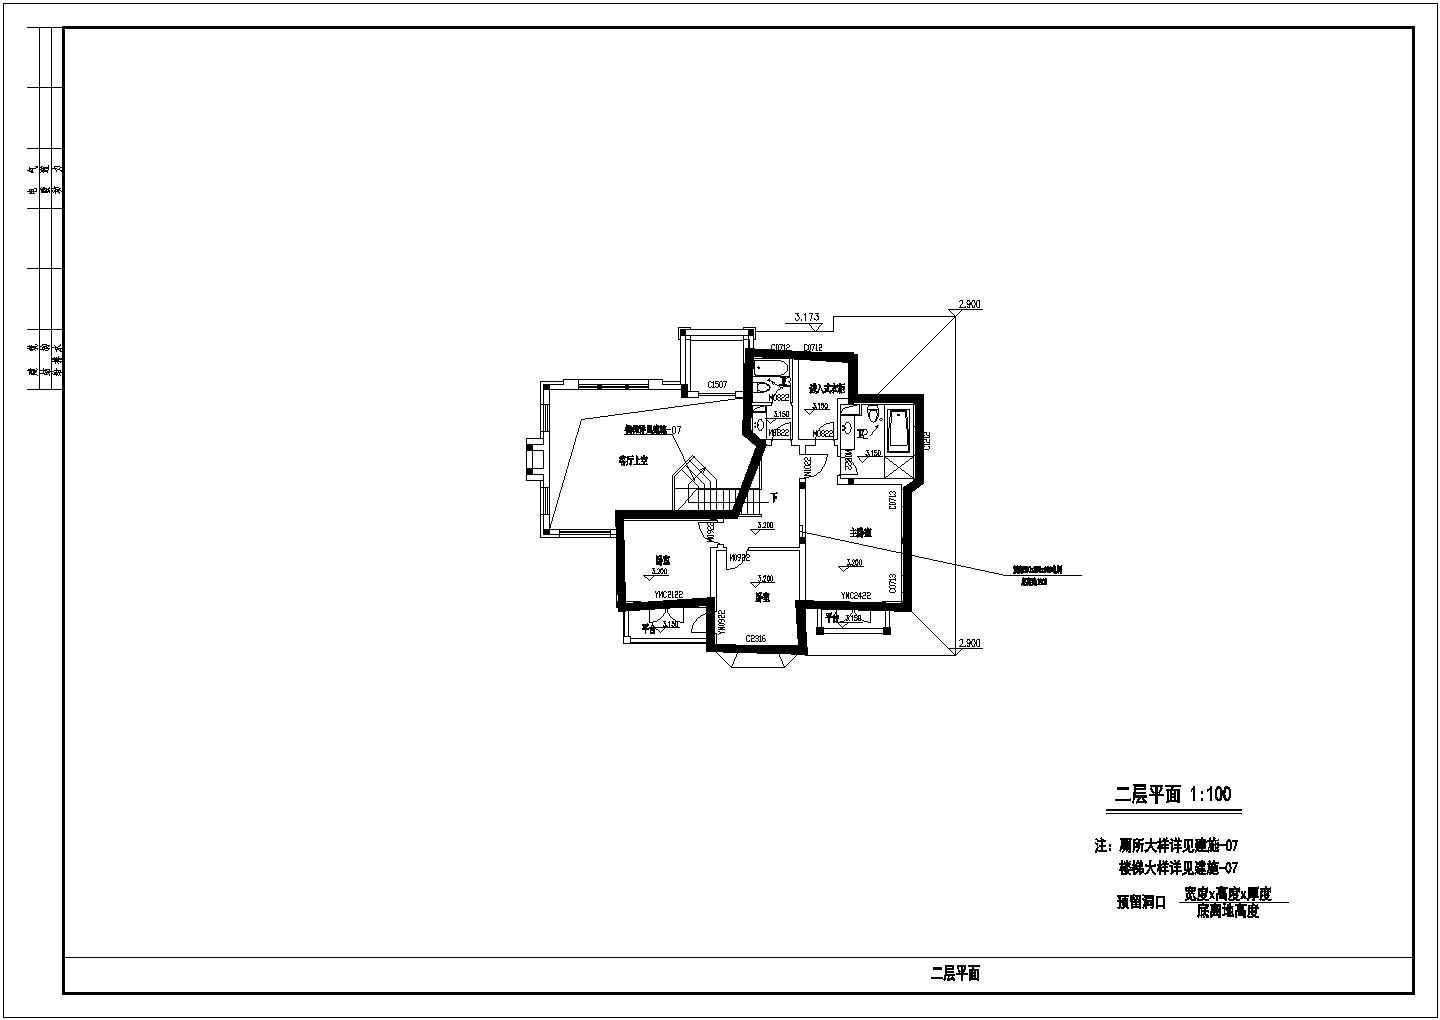 16.2x13.4米某森林住宅区二层别墅建筑方案图